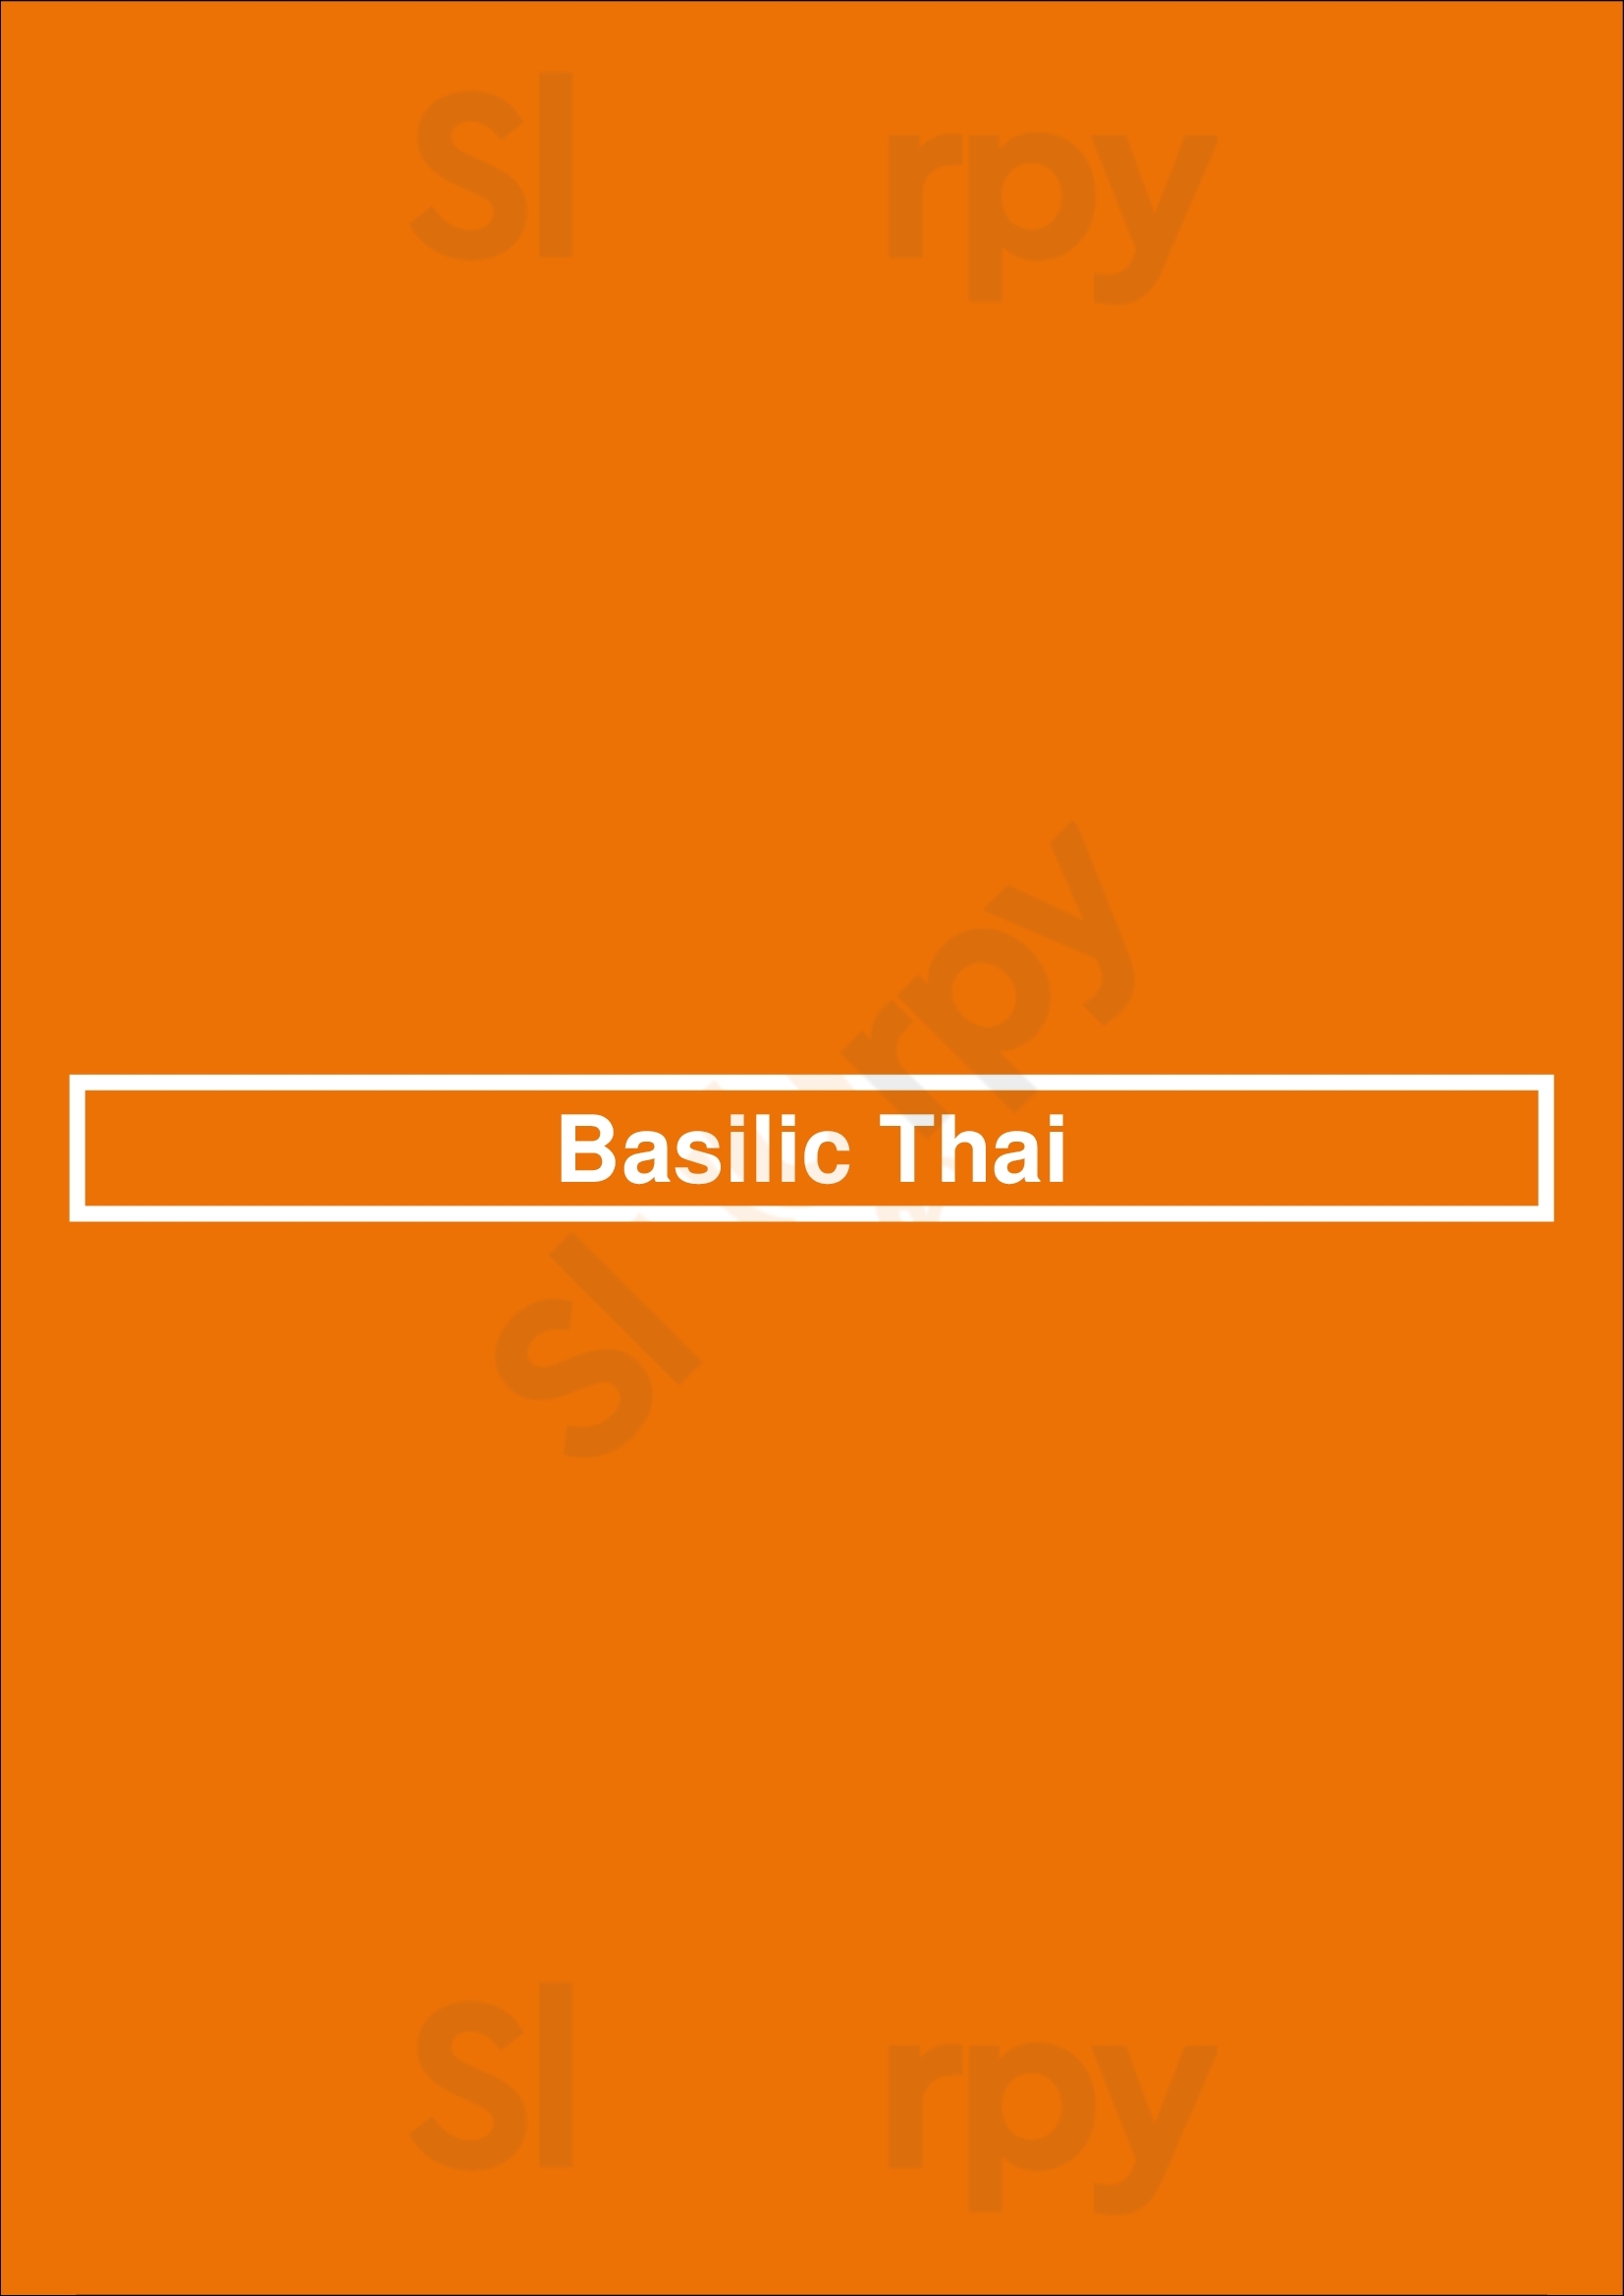 Basilic Thai Paris Menu - 1